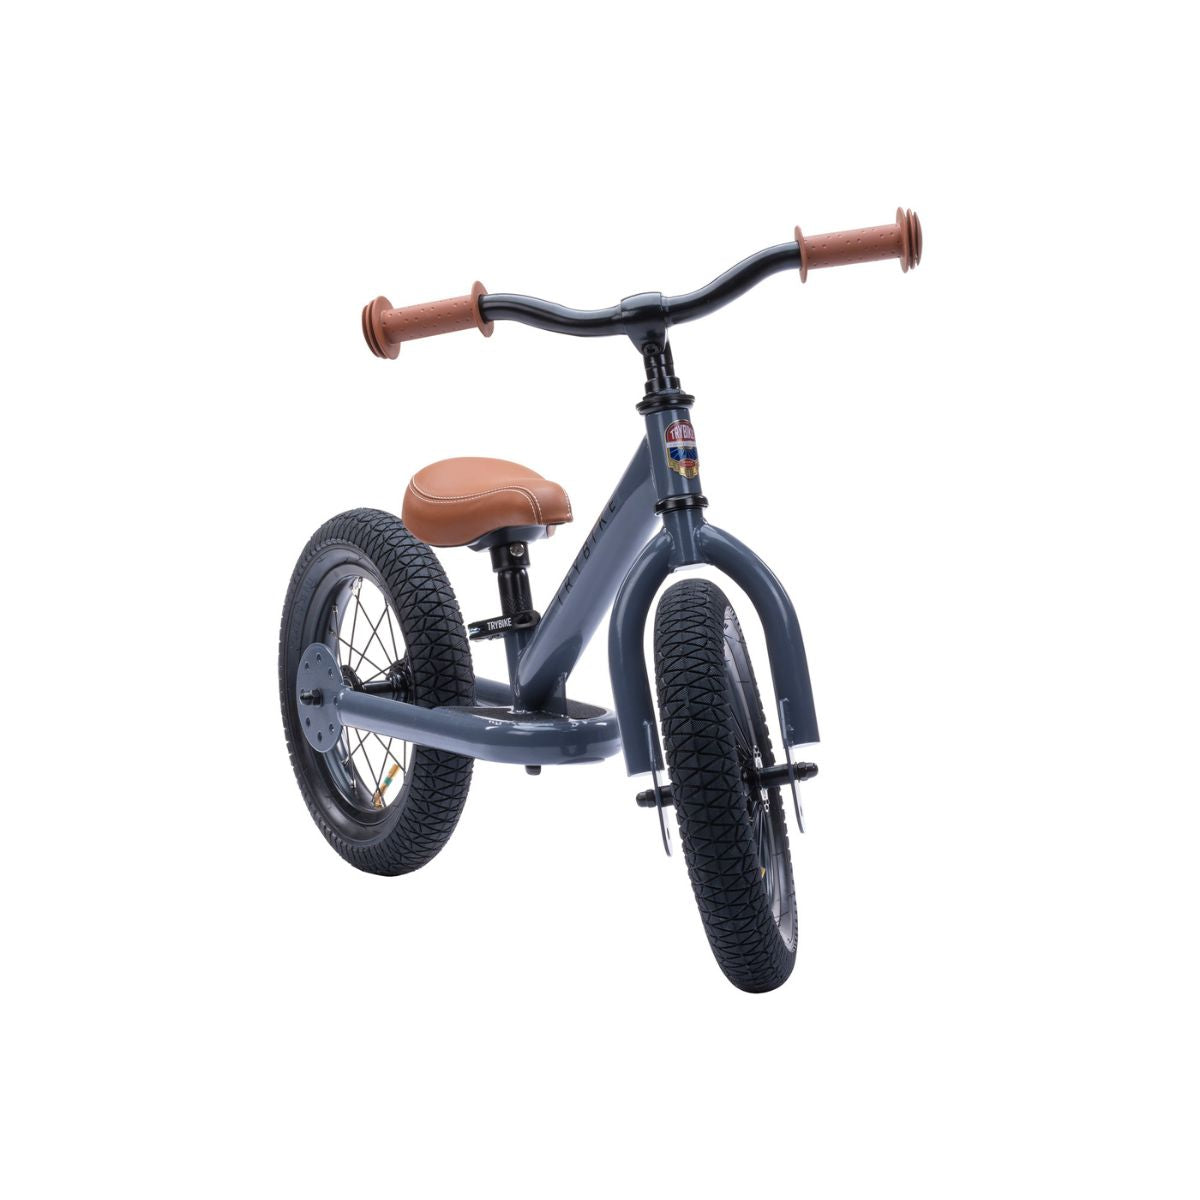 Bestel de Trybike steel 2-in-1 driewieler in de kleur grey en laat je kindje het plezier van fietsen ontdekken! Eenvoudig om te bouwen van een loopfiets naar een echte fiets. Duurzaam en veilig. VanZus